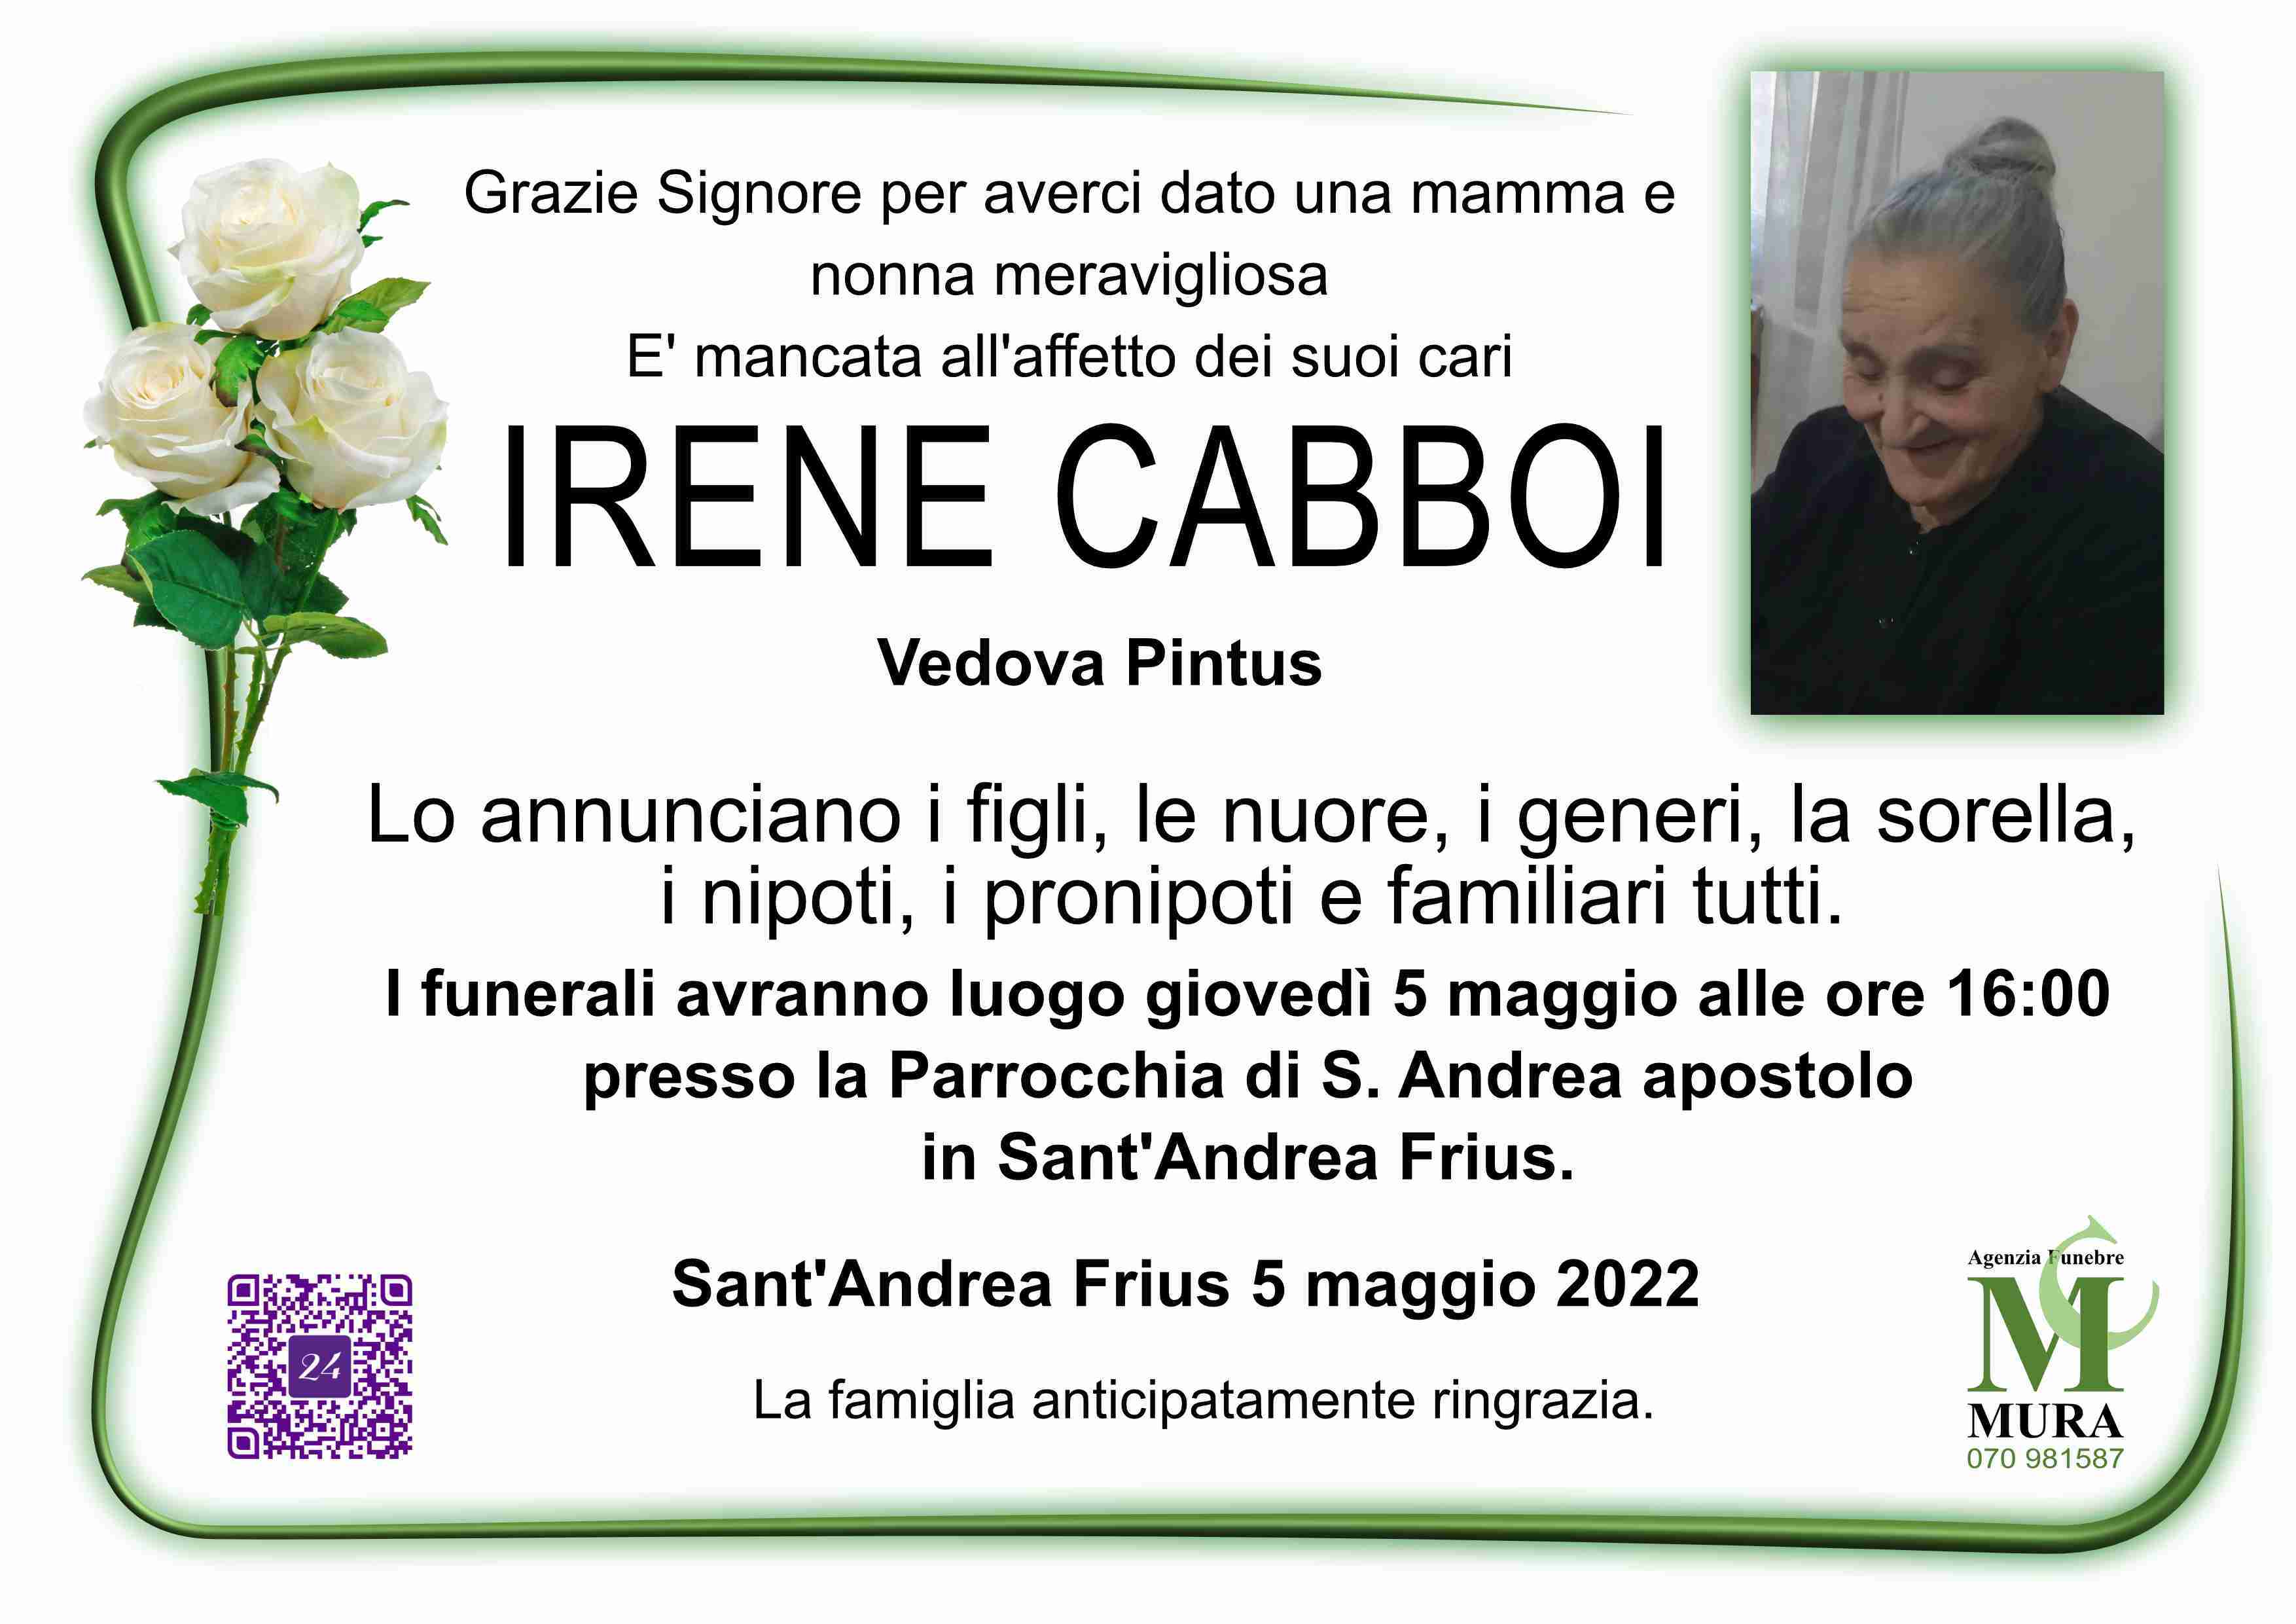 Irene Cabboi